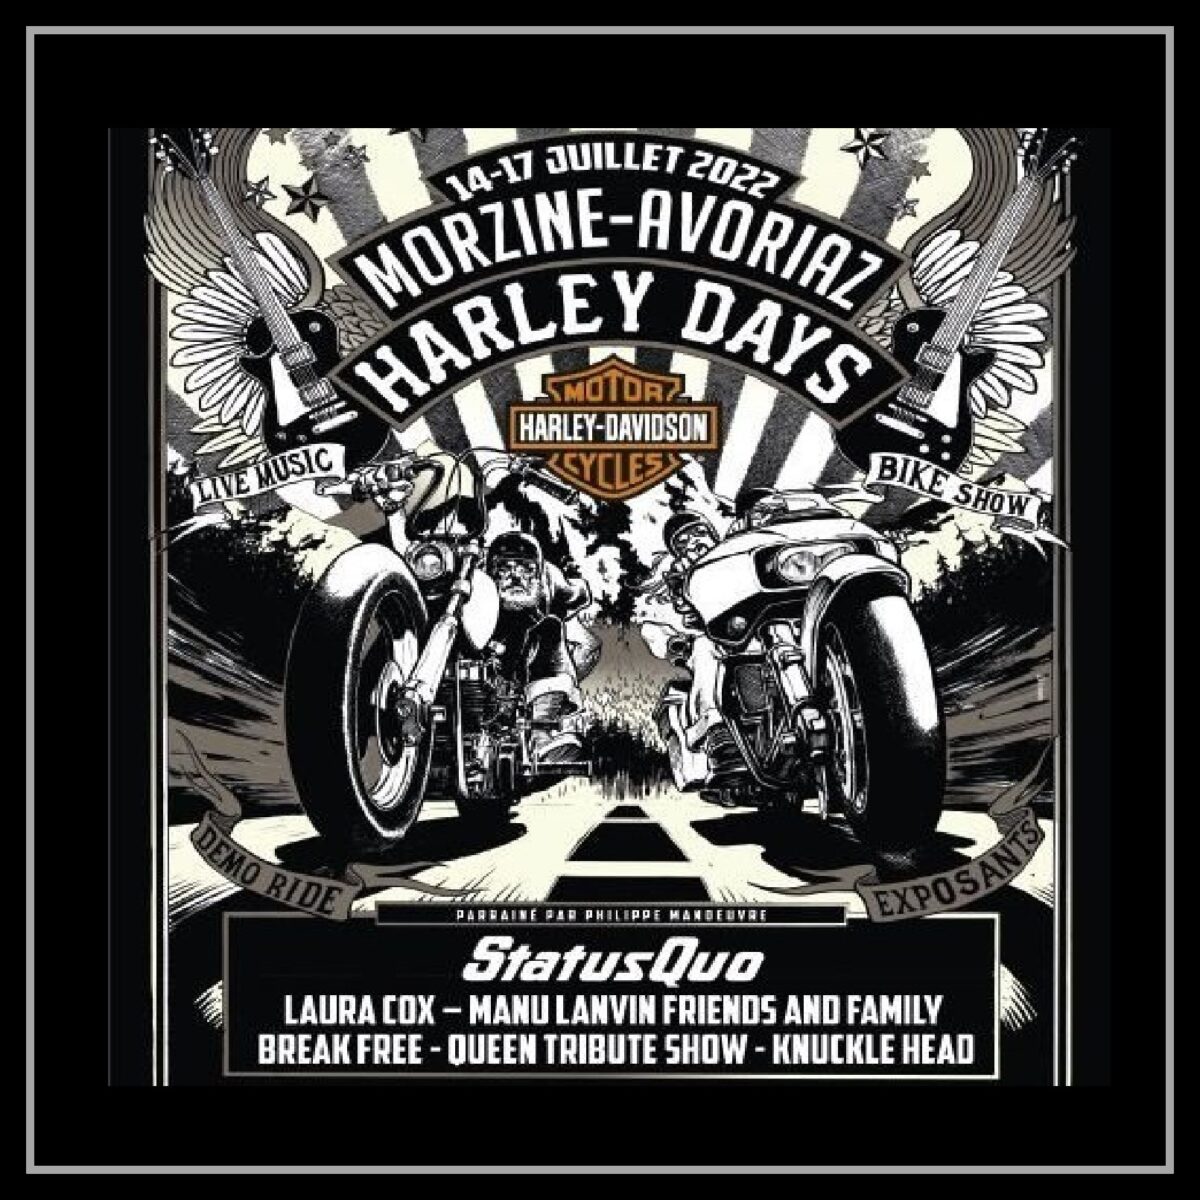 Morzine-Avoriaz Harley Days 2022